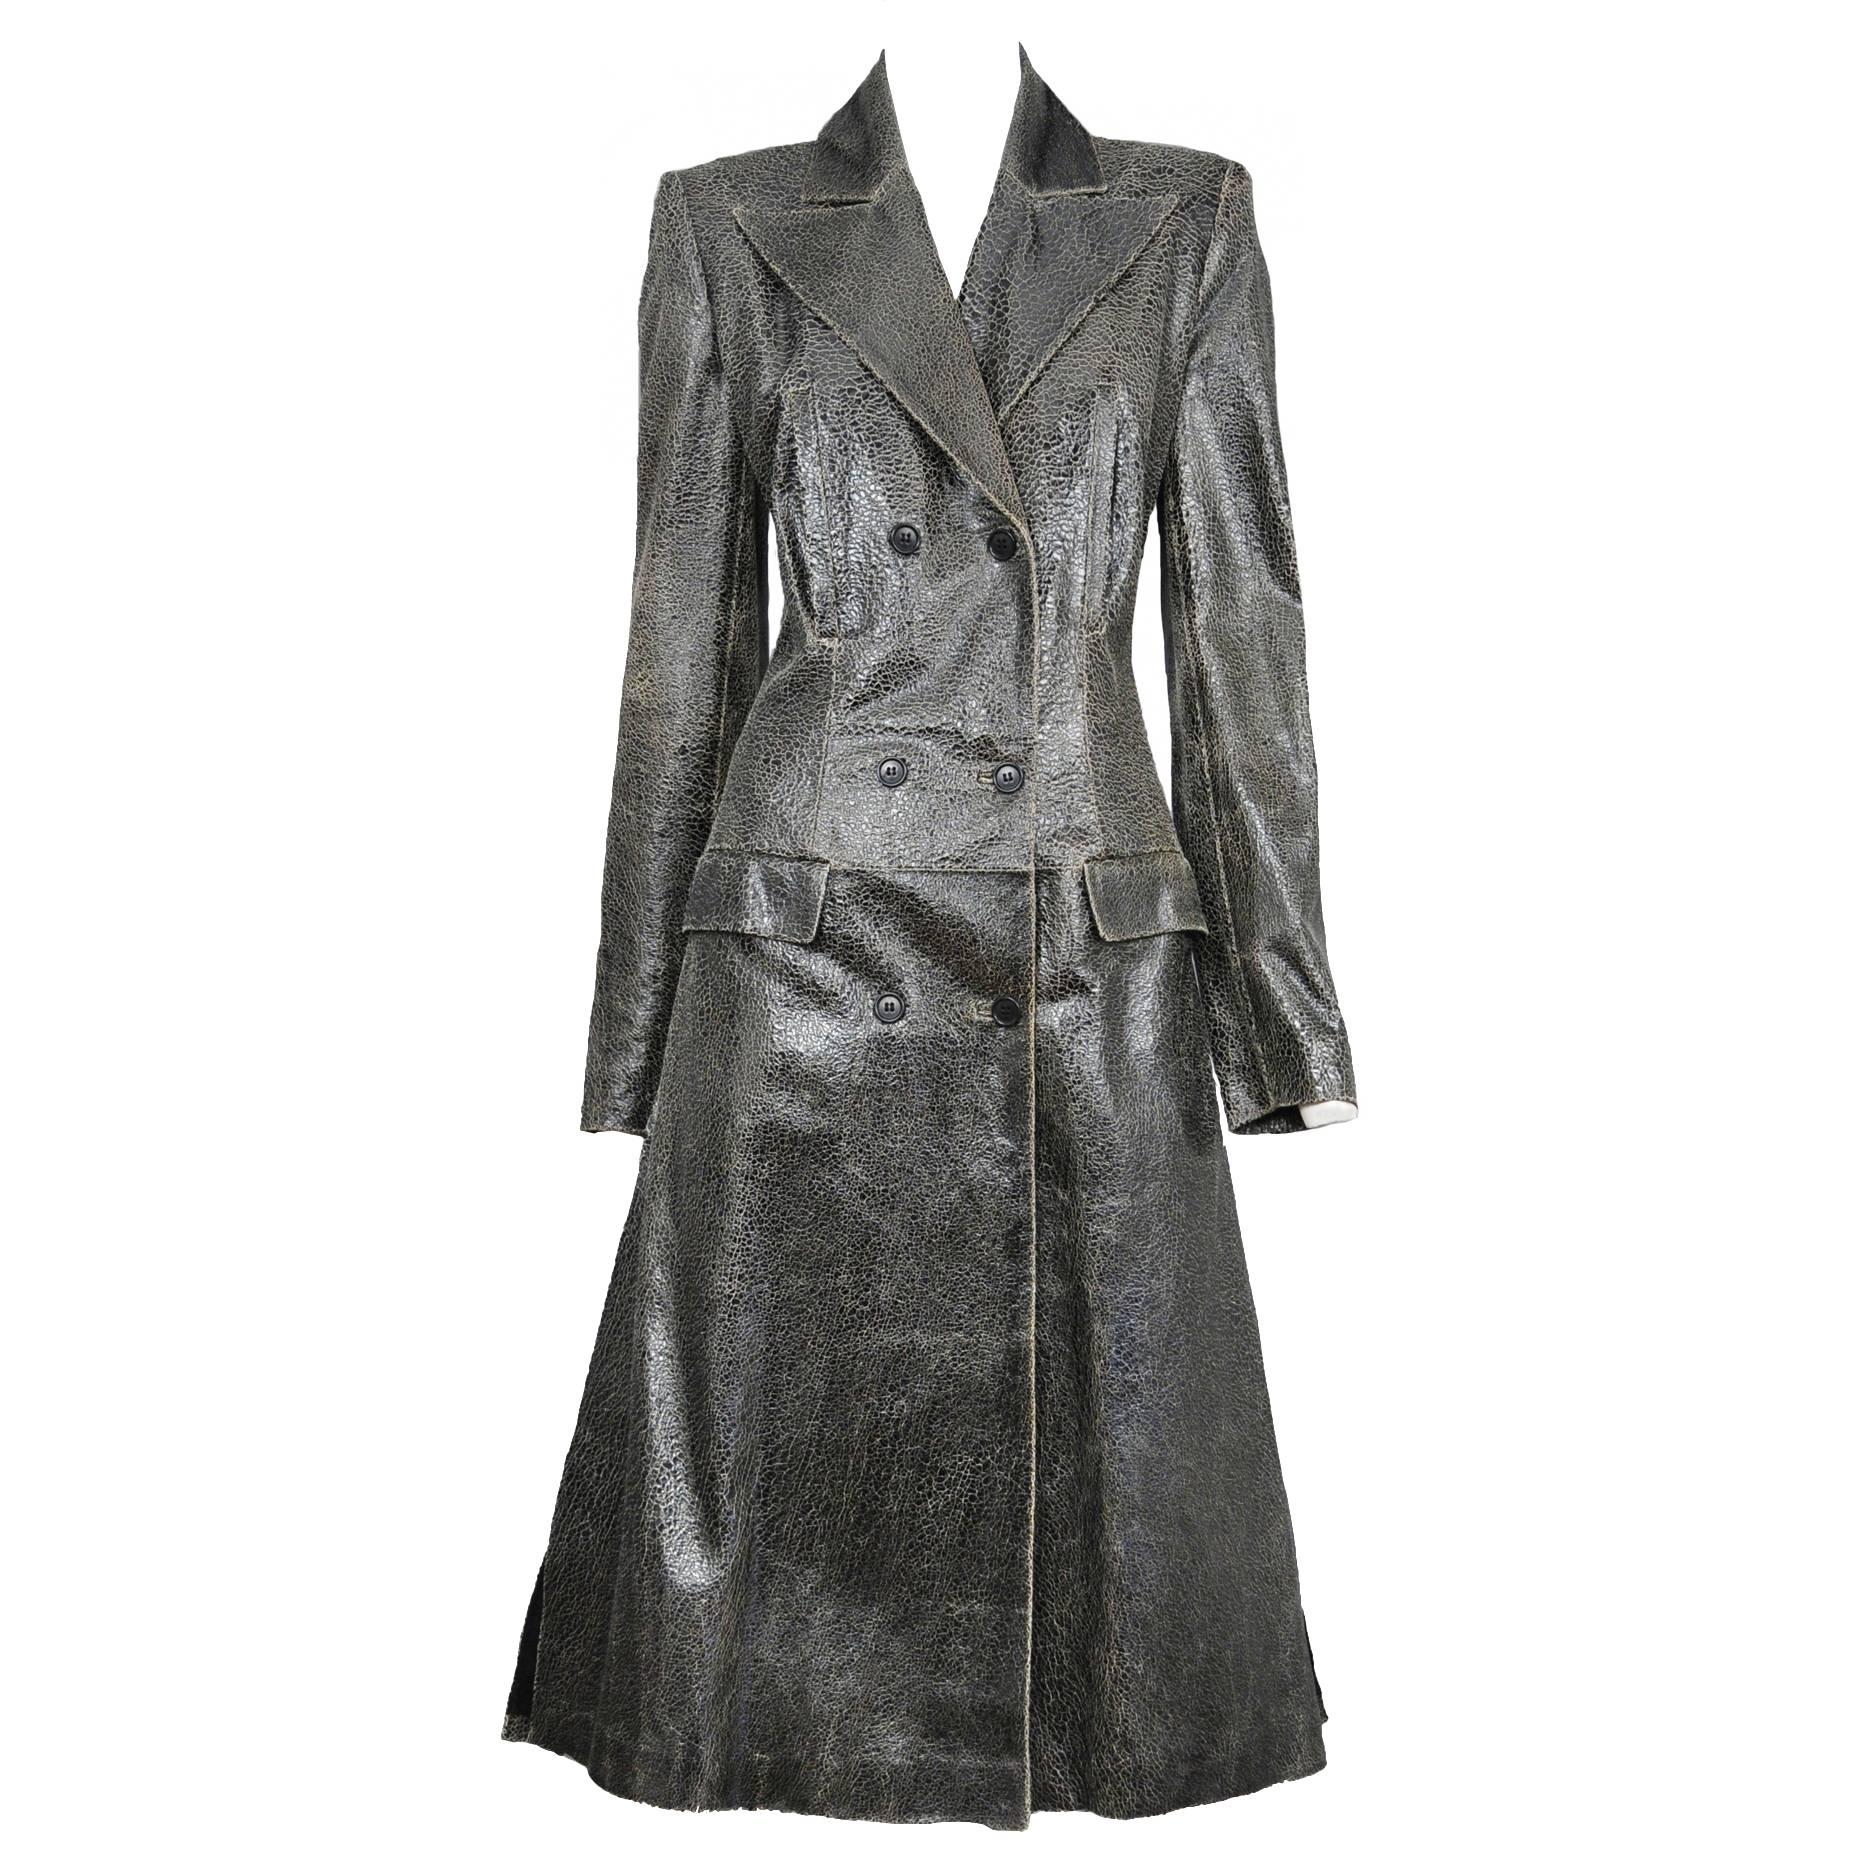 McQueen Overlook Crackled Leather Coat 